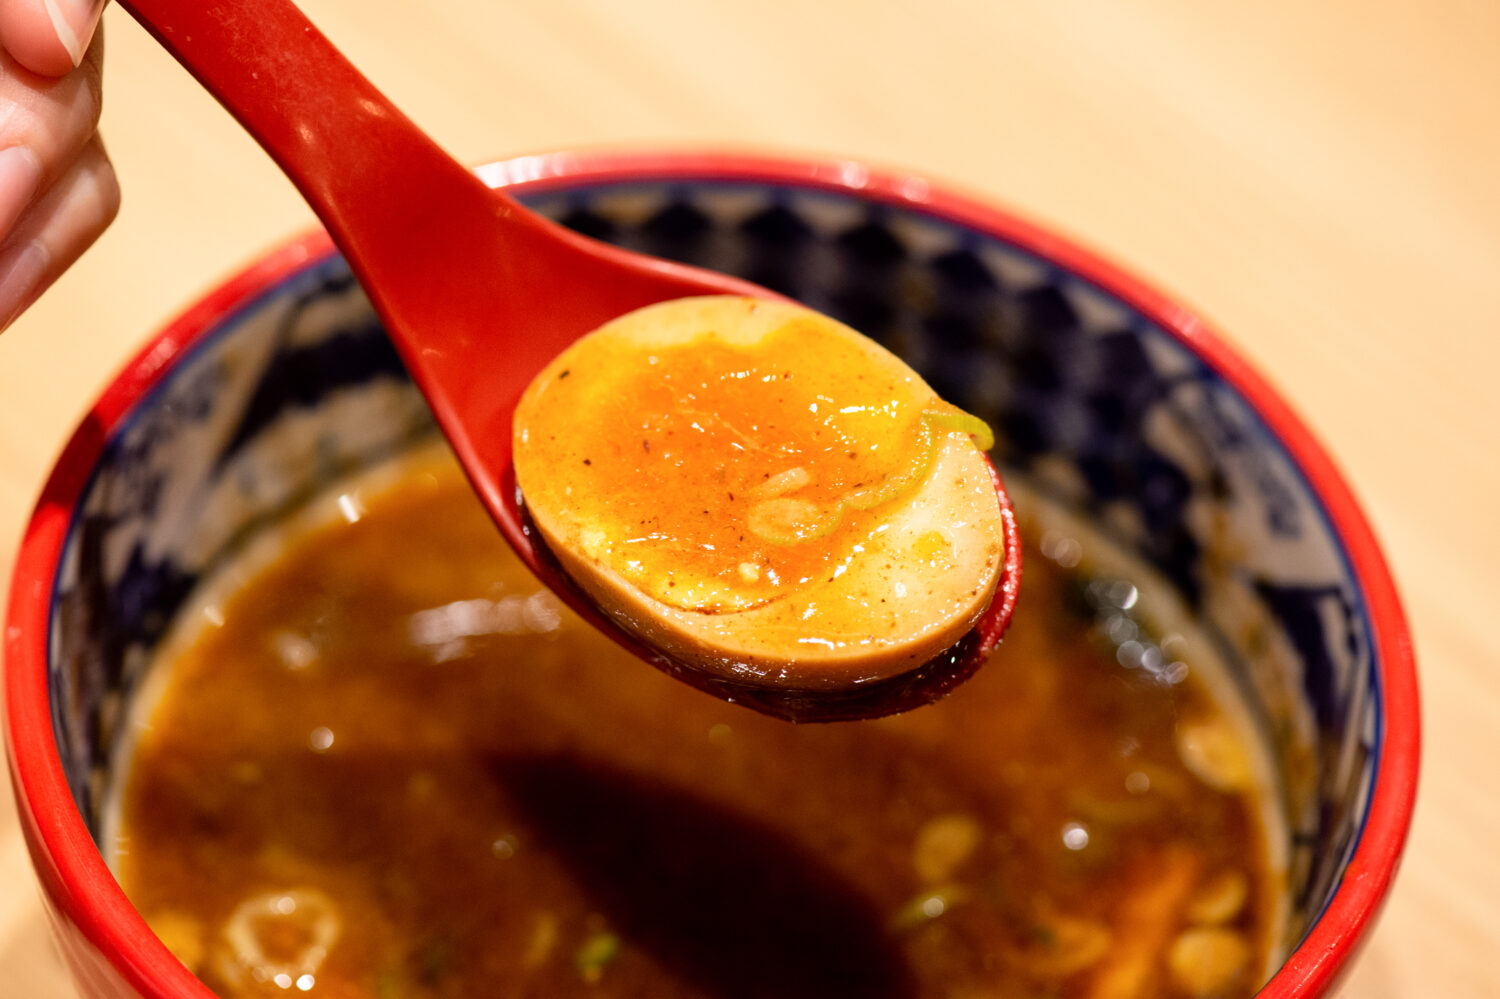 おつまみ感覚でそのまま食べるのもツウですが、やはりここはスープに浸して味わうのが王道です。